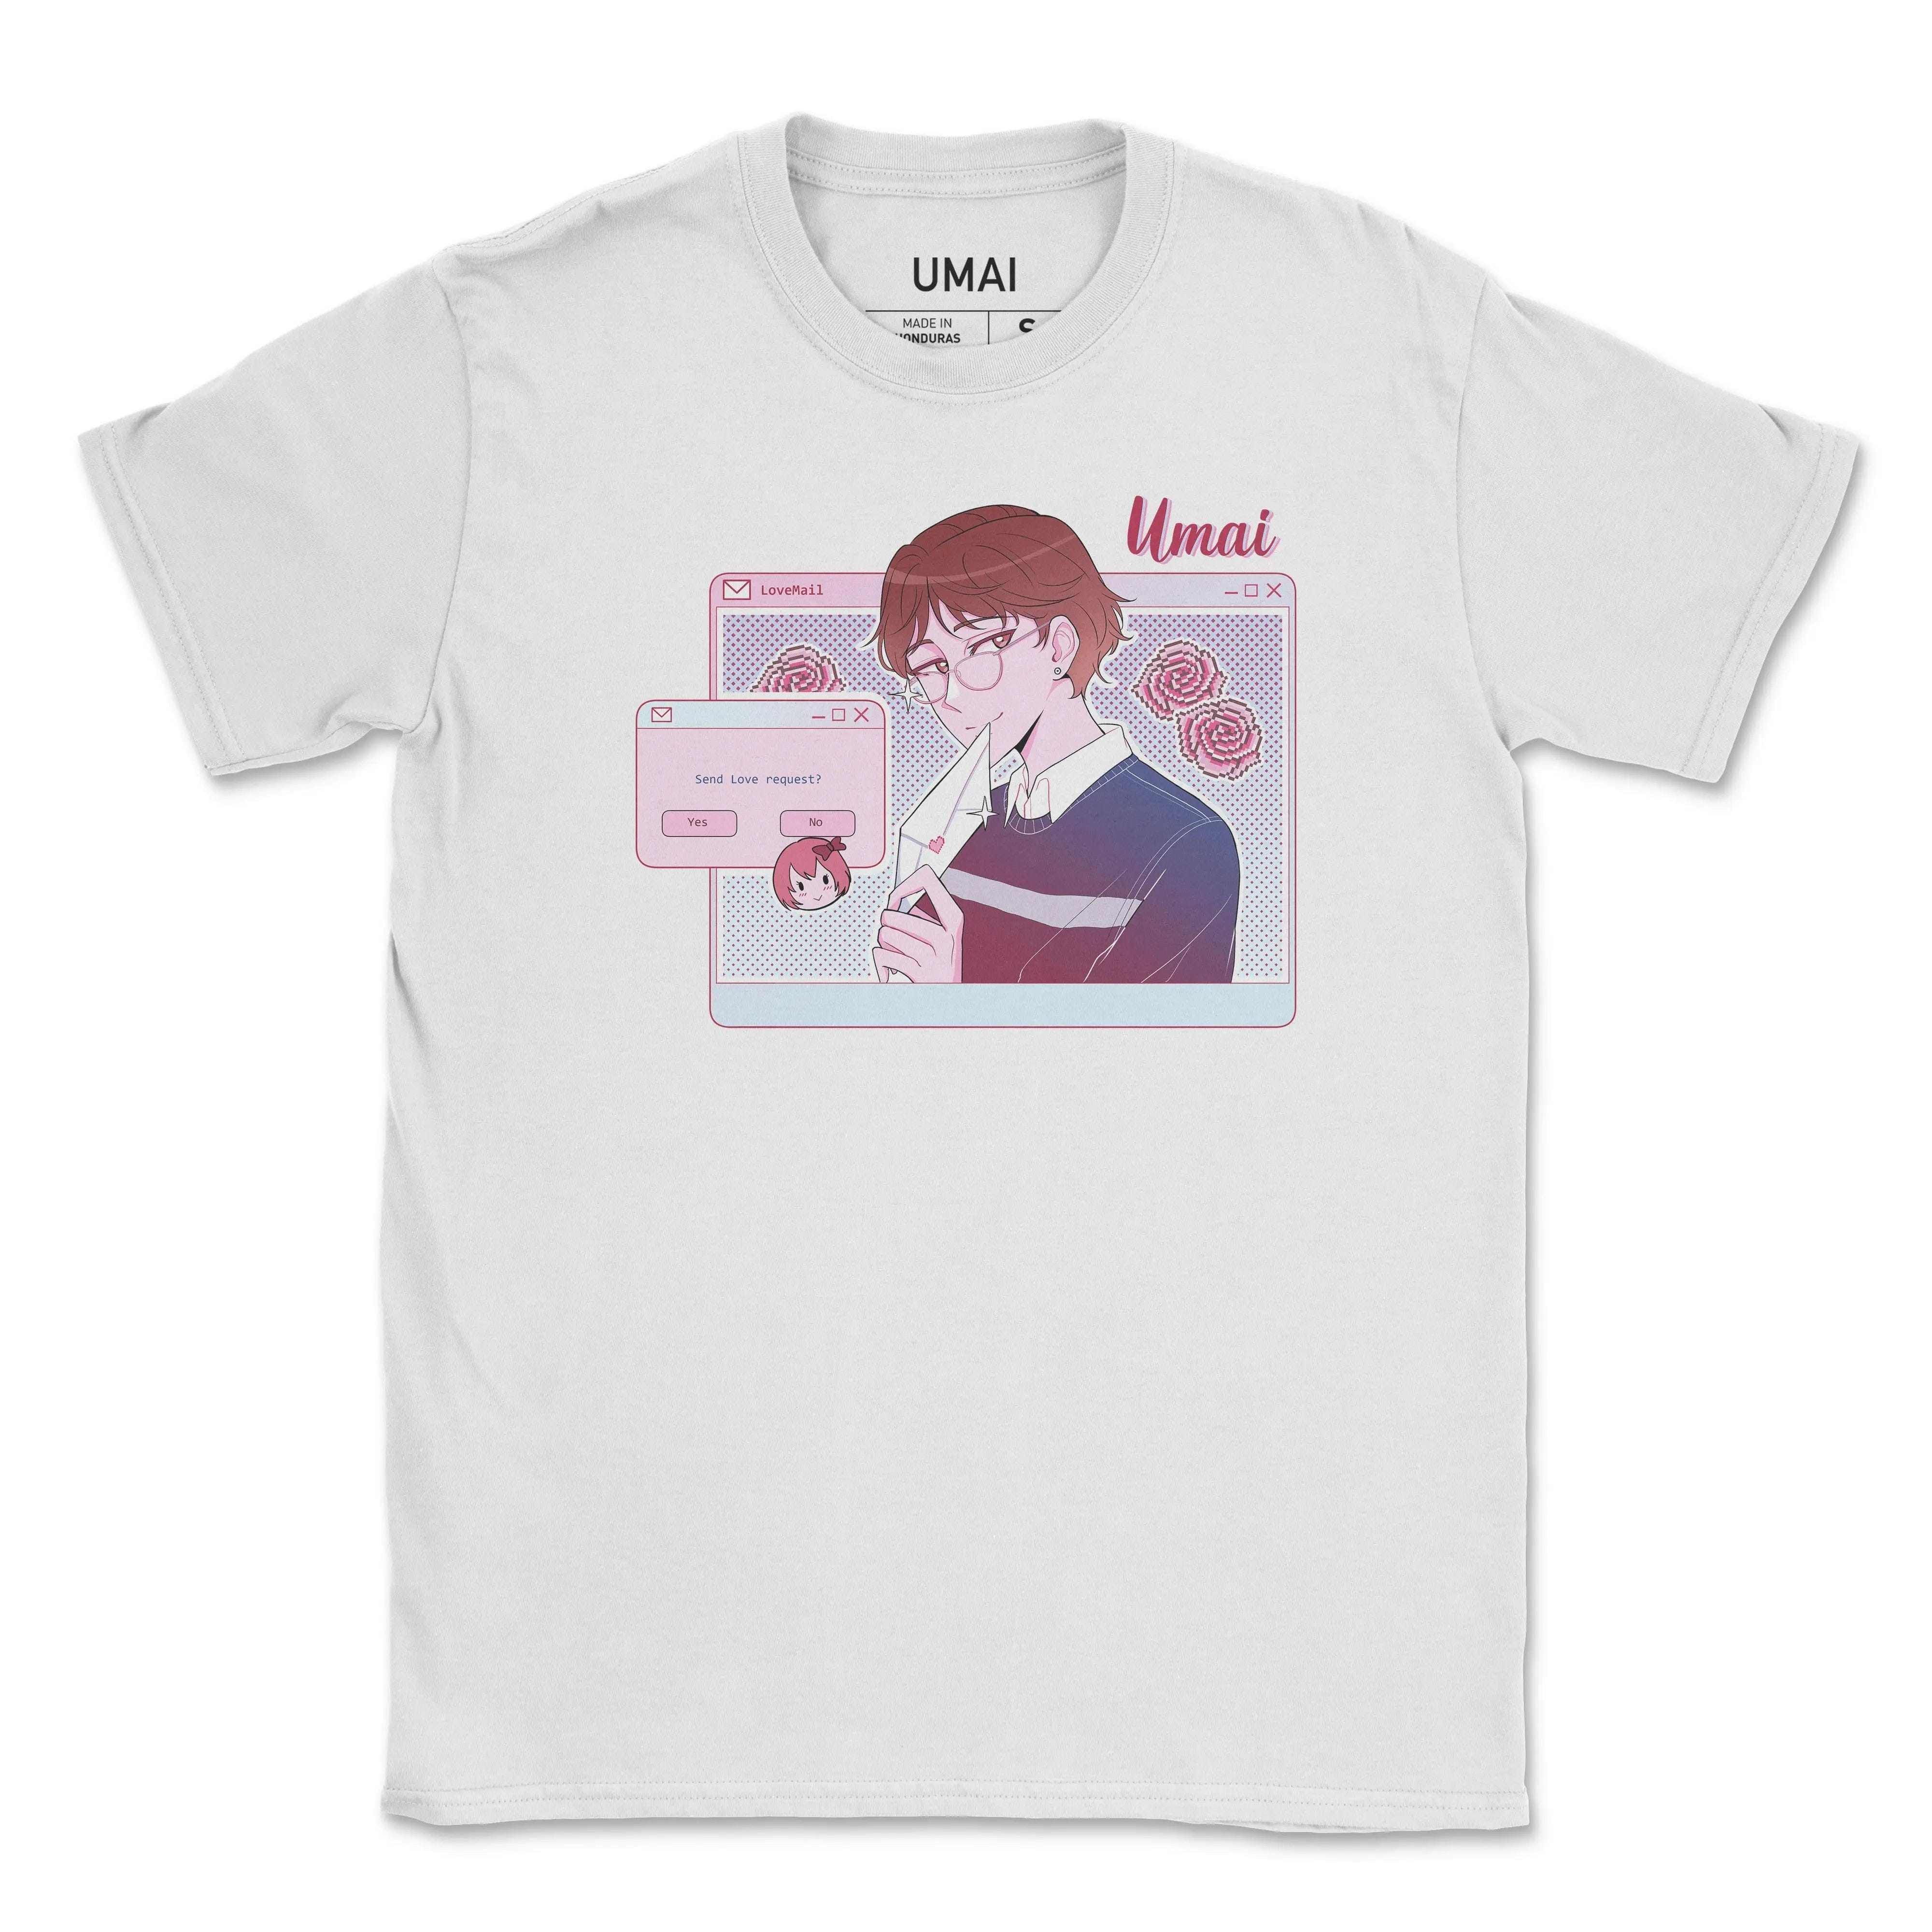 Exclusivité février 2021 (garçon) • T-shirt